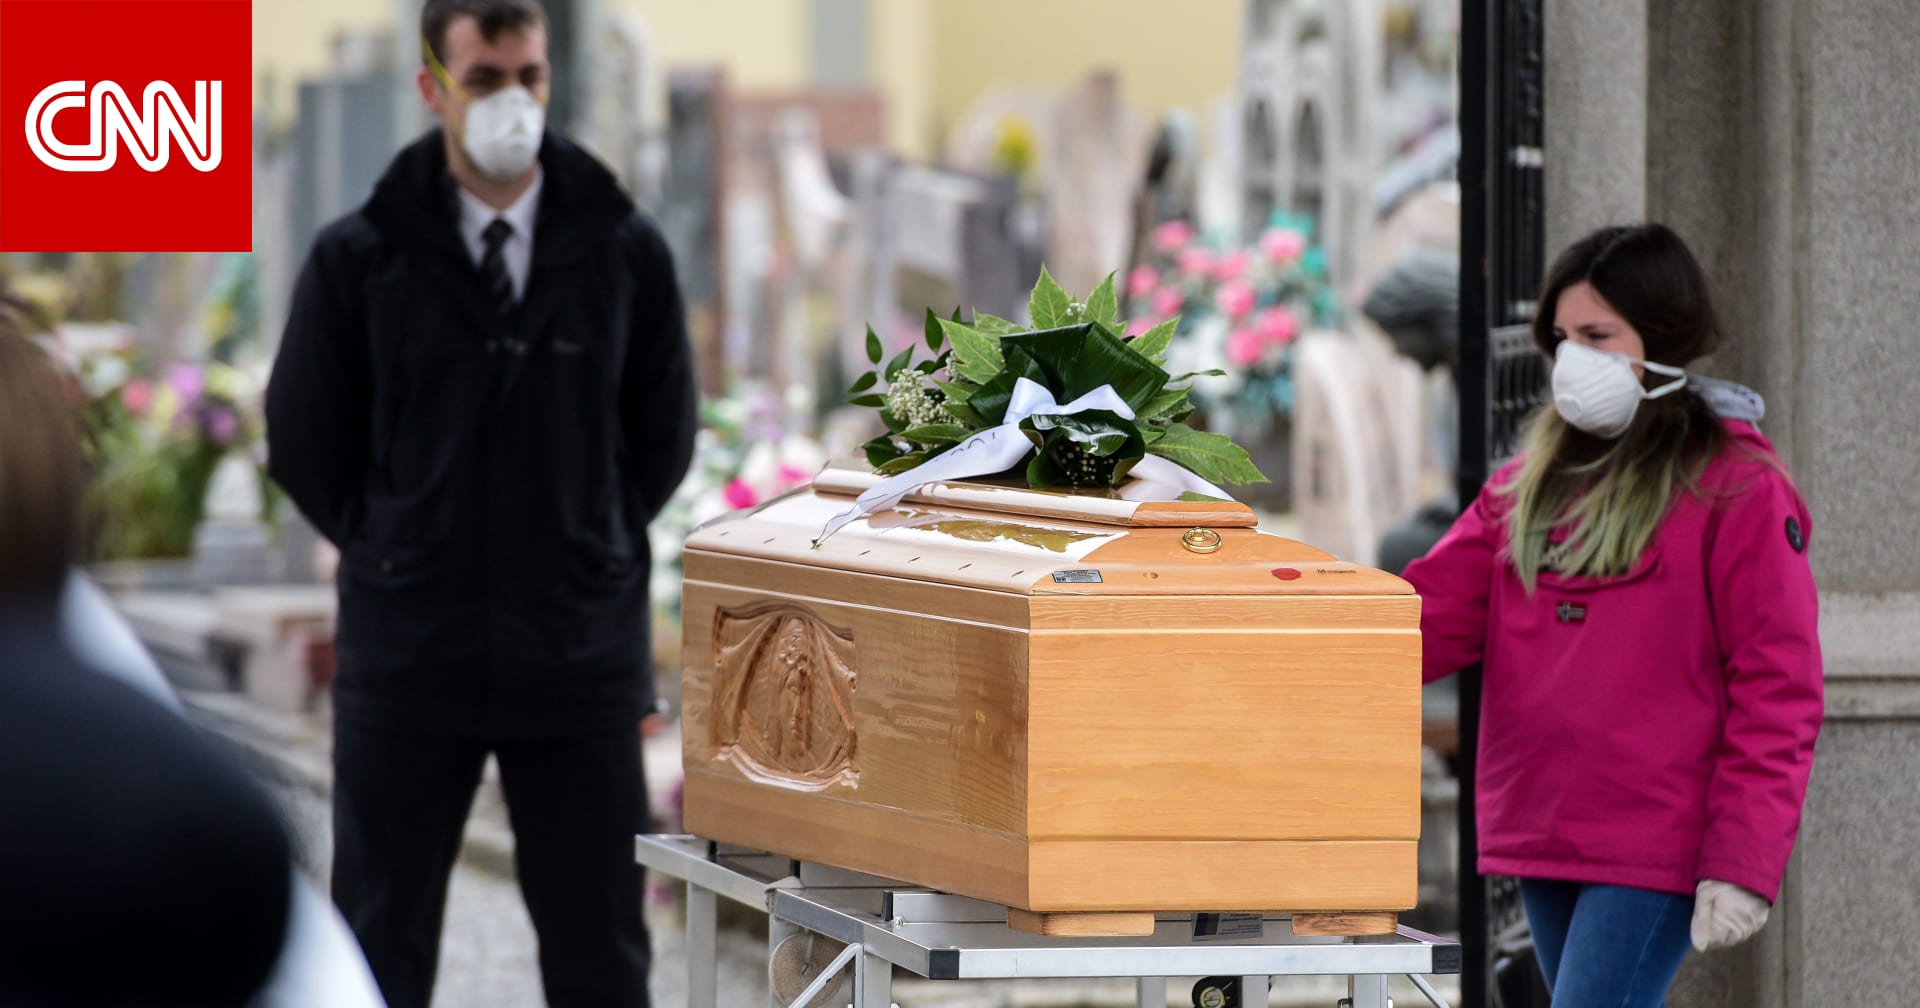 6 آلاف وفاة بفيروس كورونا في إيطاليا.. وأكثر من 381 ألف إصابة حول العالم - CNN Arabic